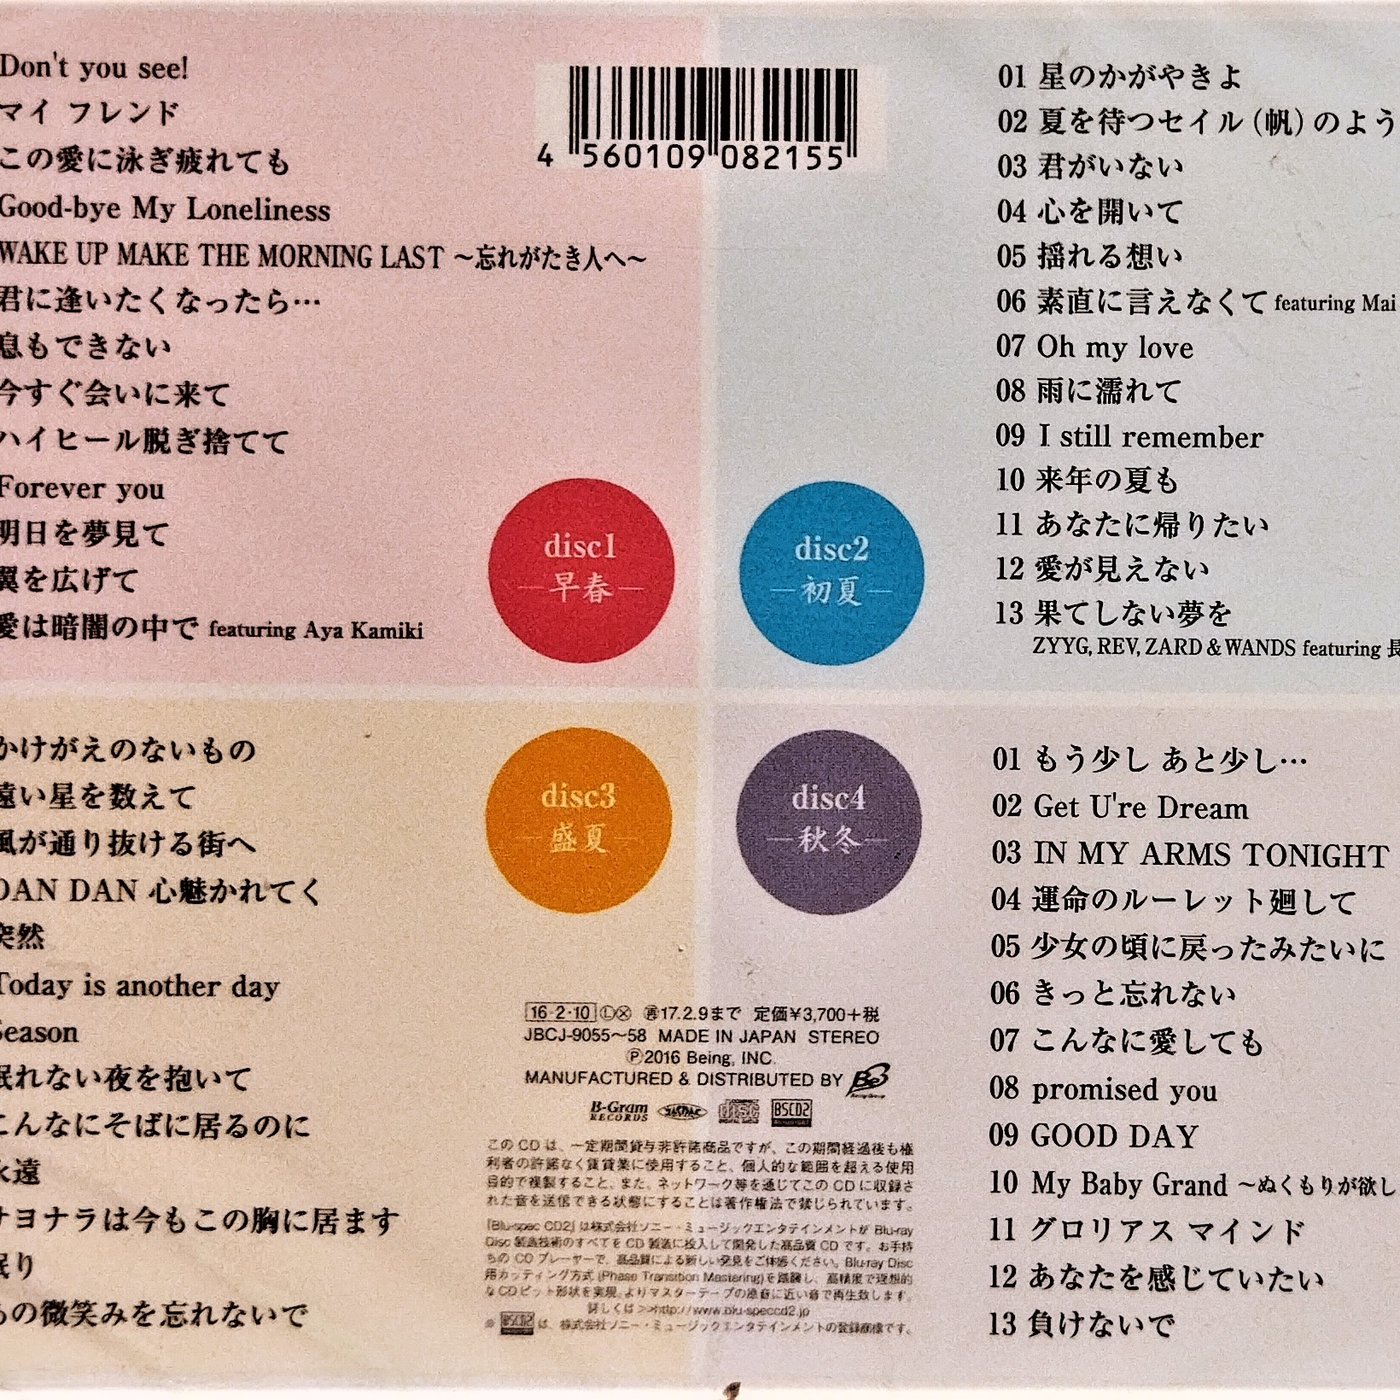 日版全新未拆 - ZARD Forever Best~25th Anniversary～Blu-spec CD2 4枚組